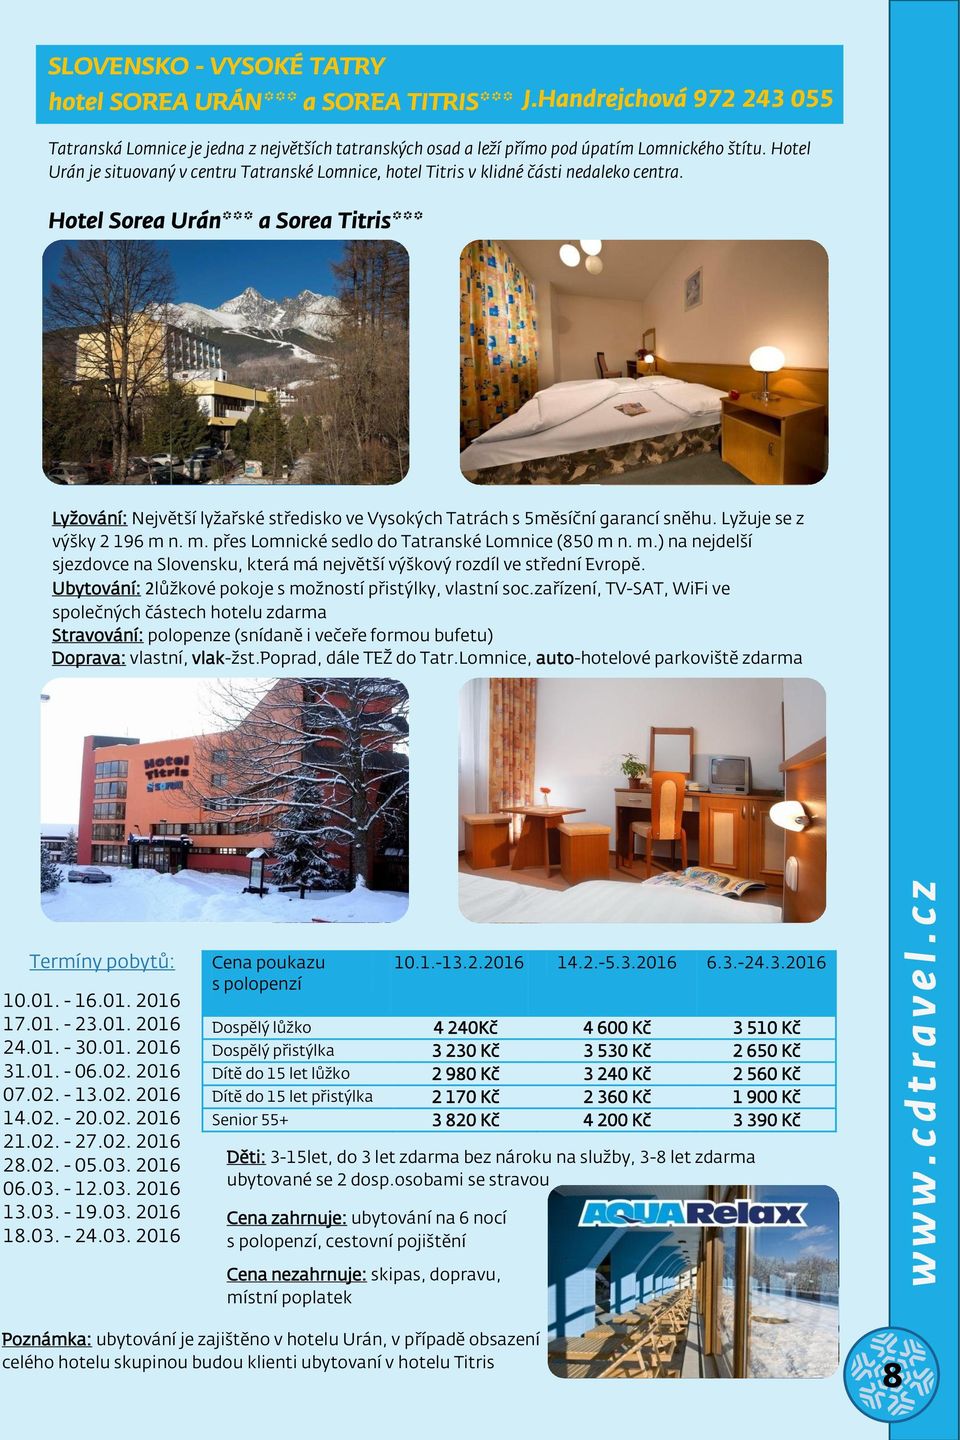 Hotel Sorea Urán*** a Sorea Titris*** Lyžování: Největší lyžařské středisko ve Vysokých Tatrách s 5měsíční garancí shu. Lyžuje se z výšky 2 196 m n. m. přes Lomnické sedlo do Tatranské Lomnice (850 m n.